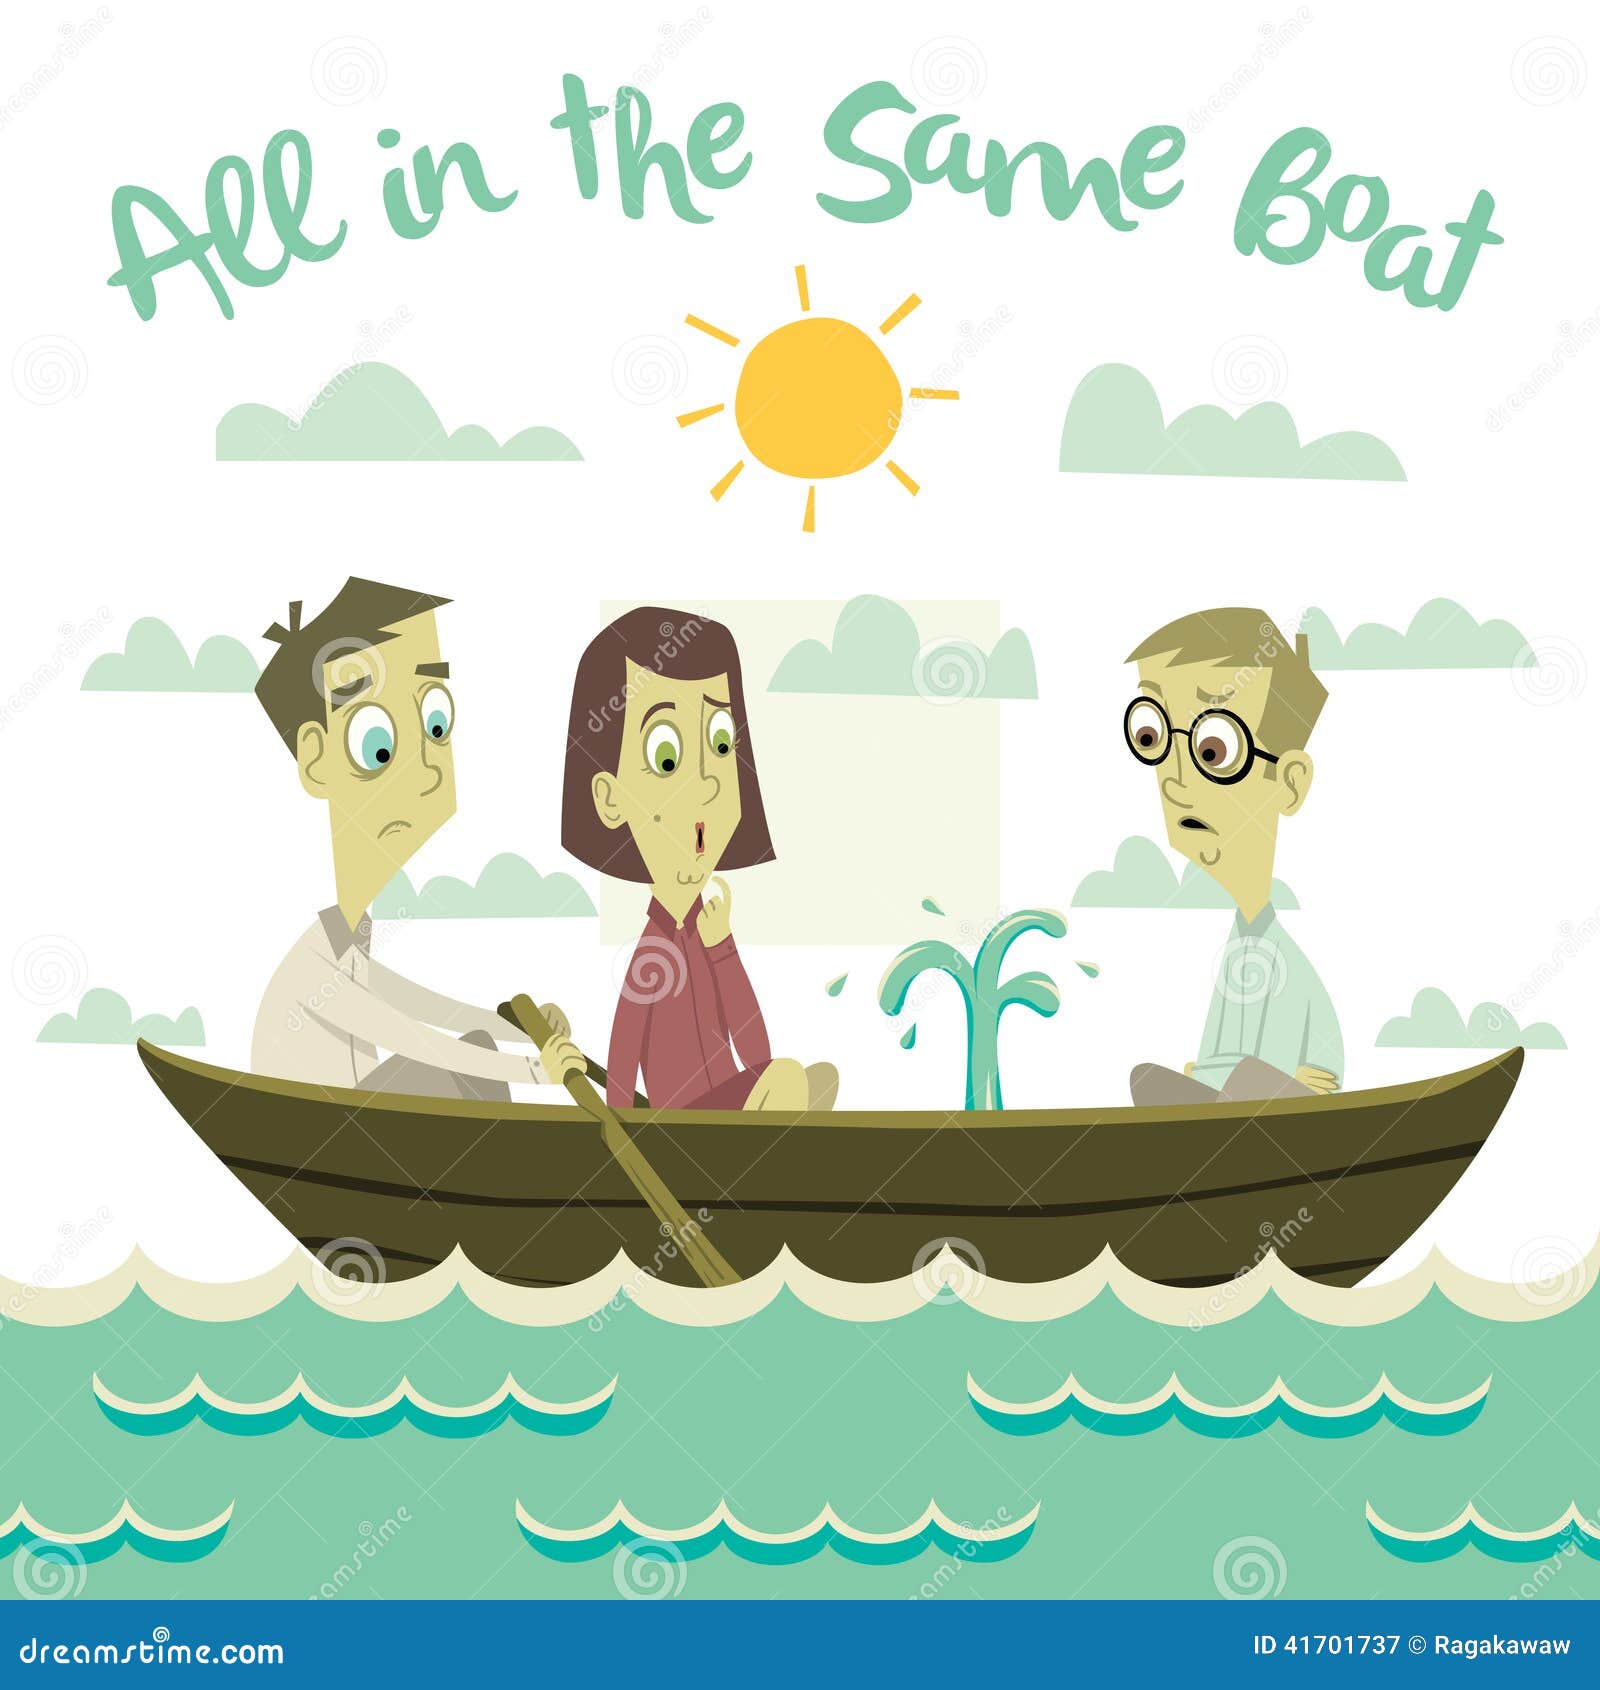 all-same-boat-illustration-doodle-idiom-41701737.jpg (1300×1390)